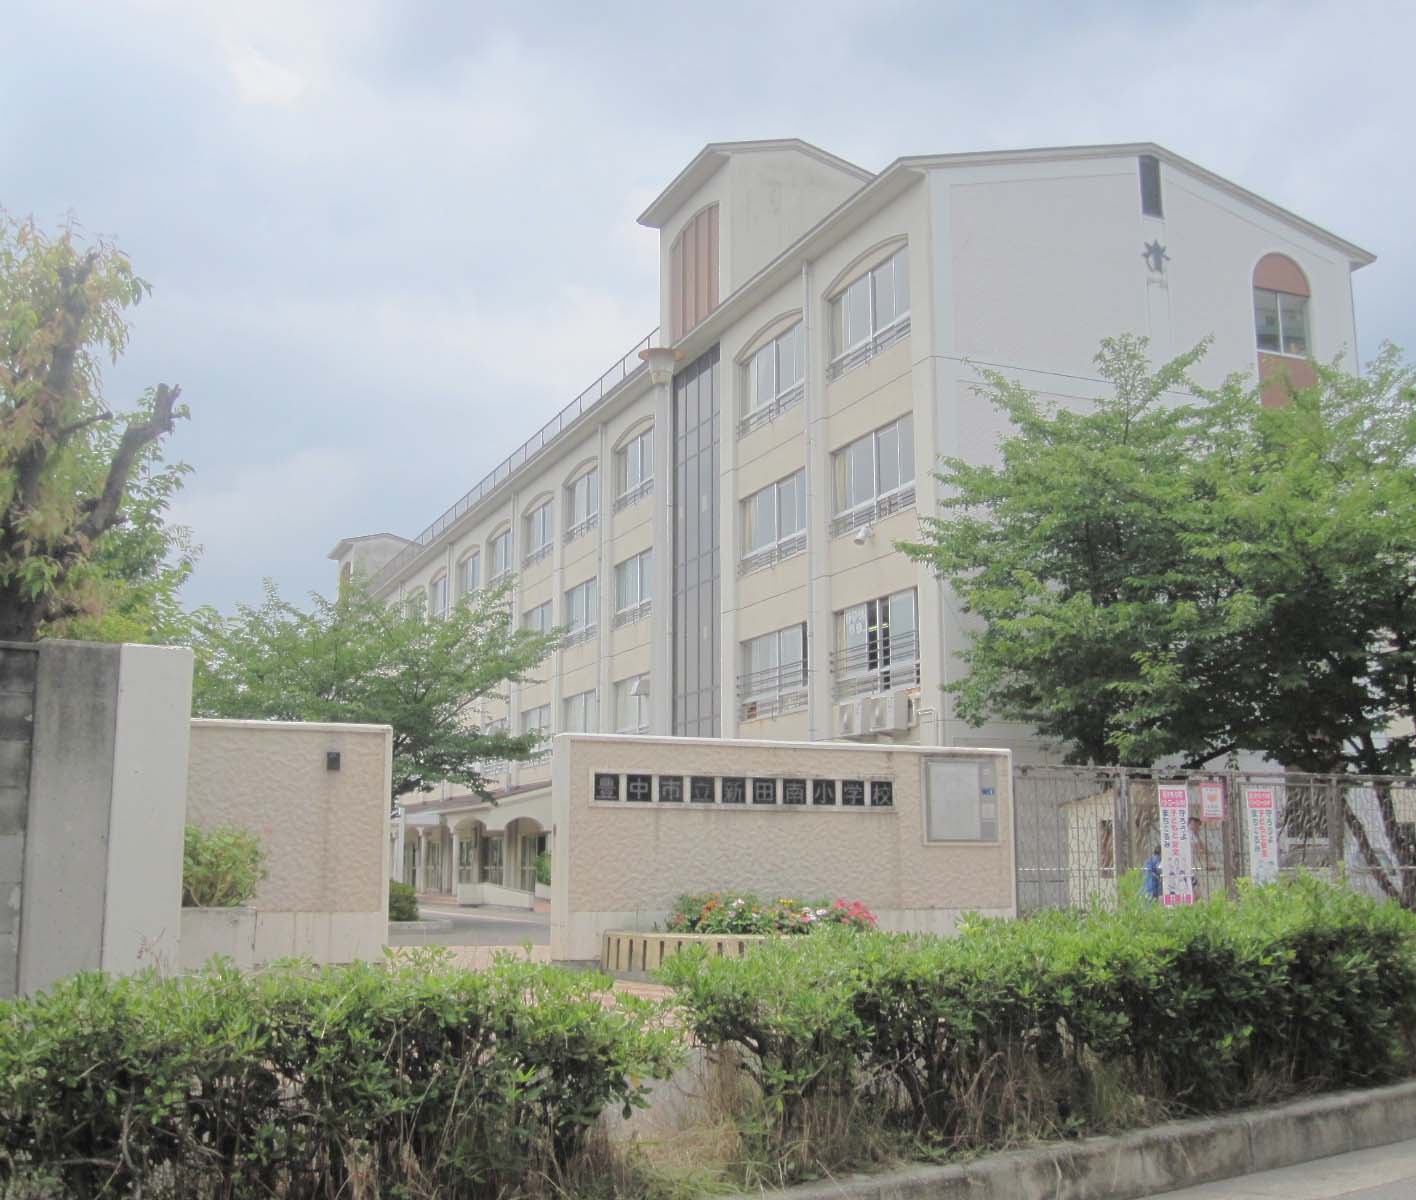 Primary school. 546m to Toyonaka Municipal Nitta Minami elementary school (elementary school)